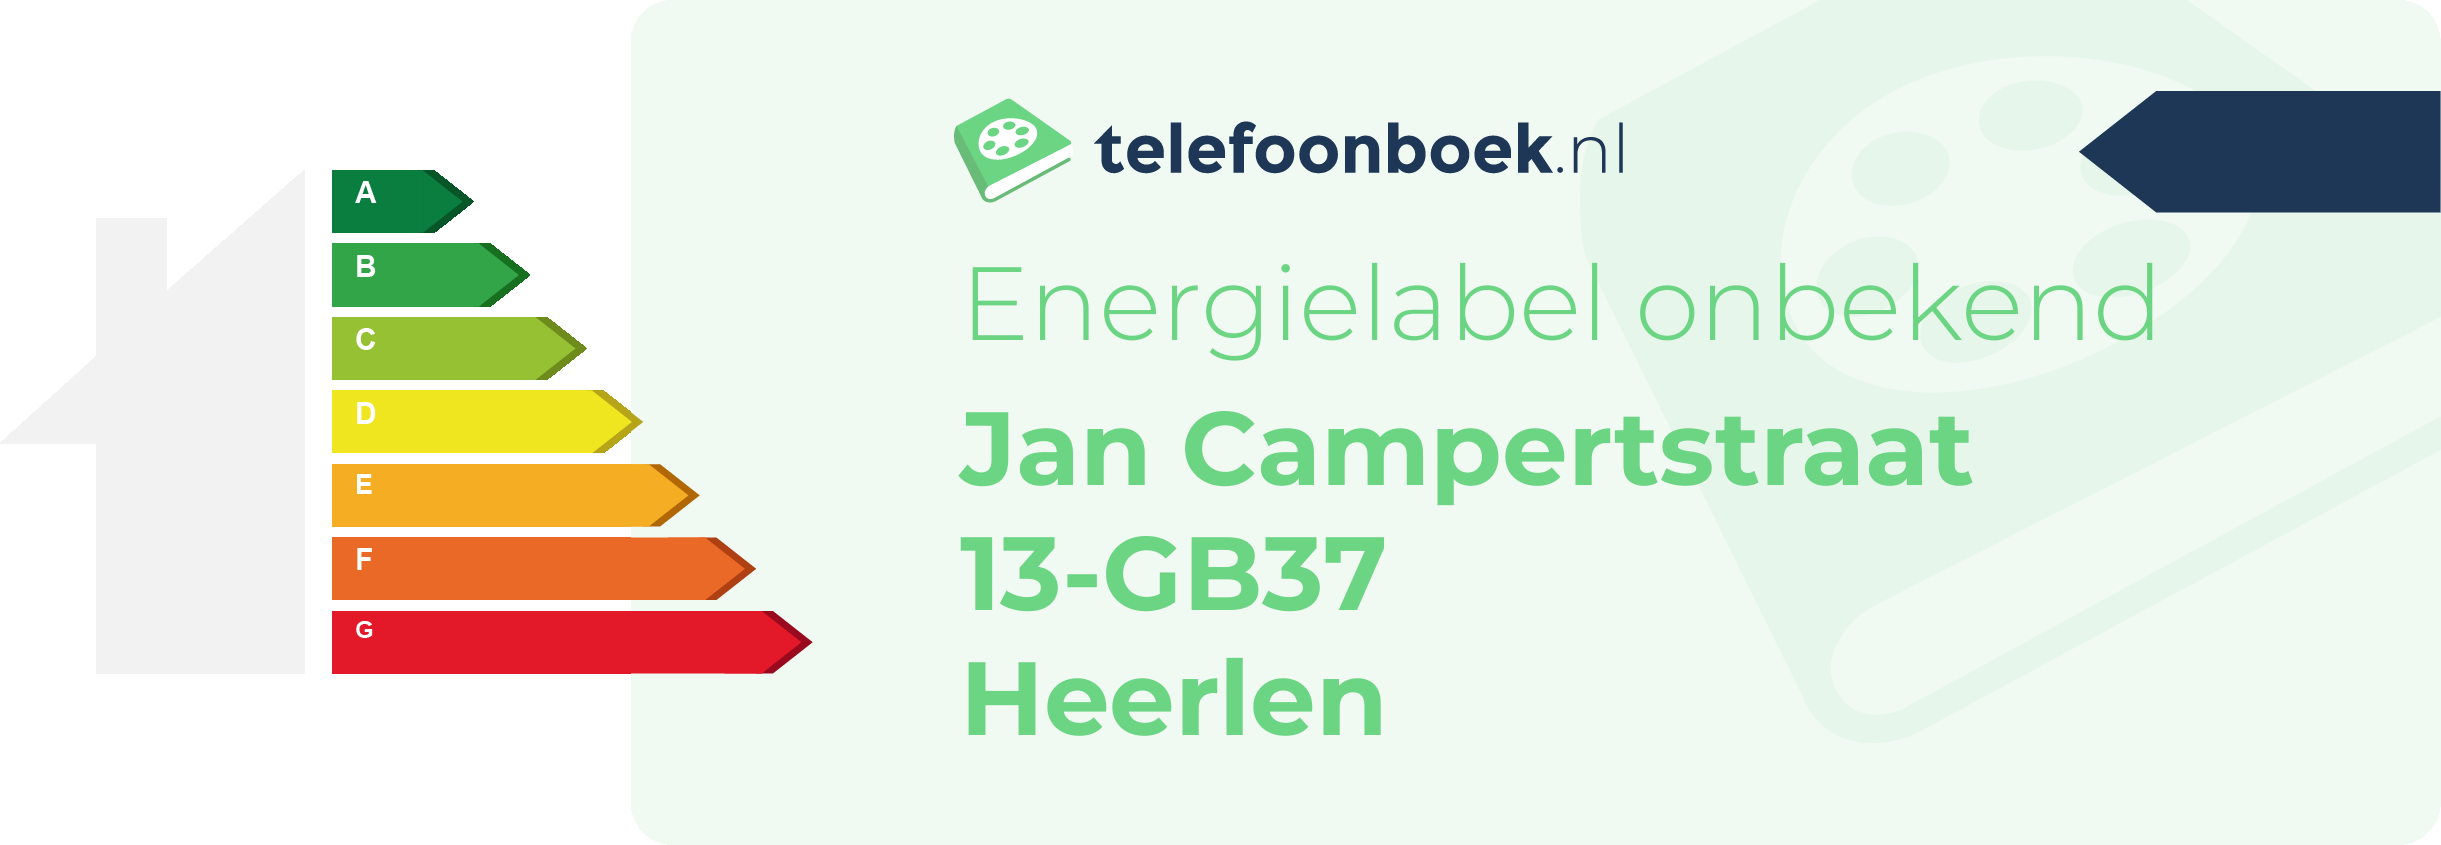 Energielabel Jan Campertstraat 13-GB37 Heerlen